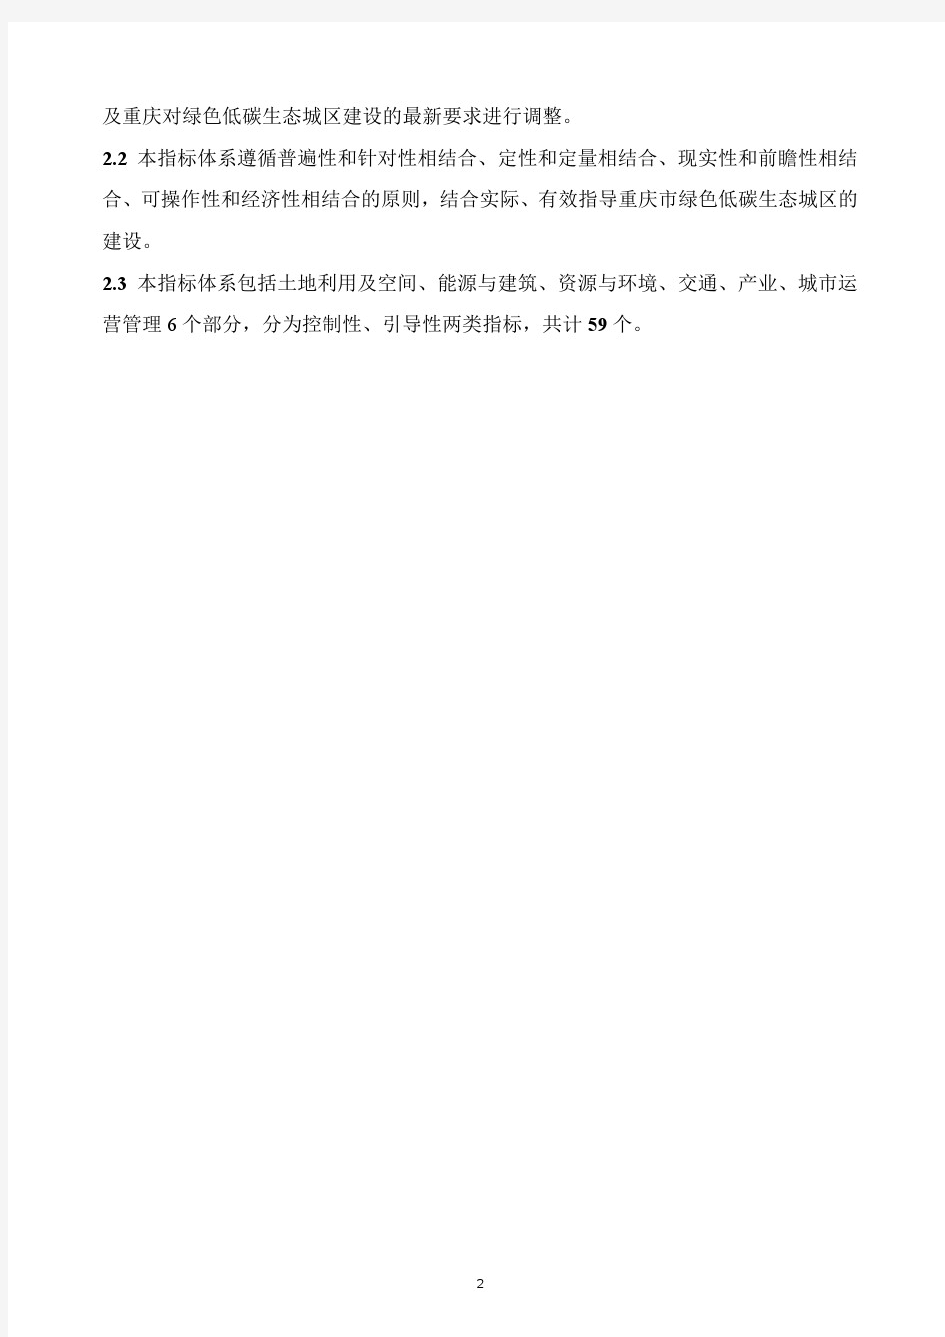 重庆市绿色低碳生态城区评价指标体系(试行)